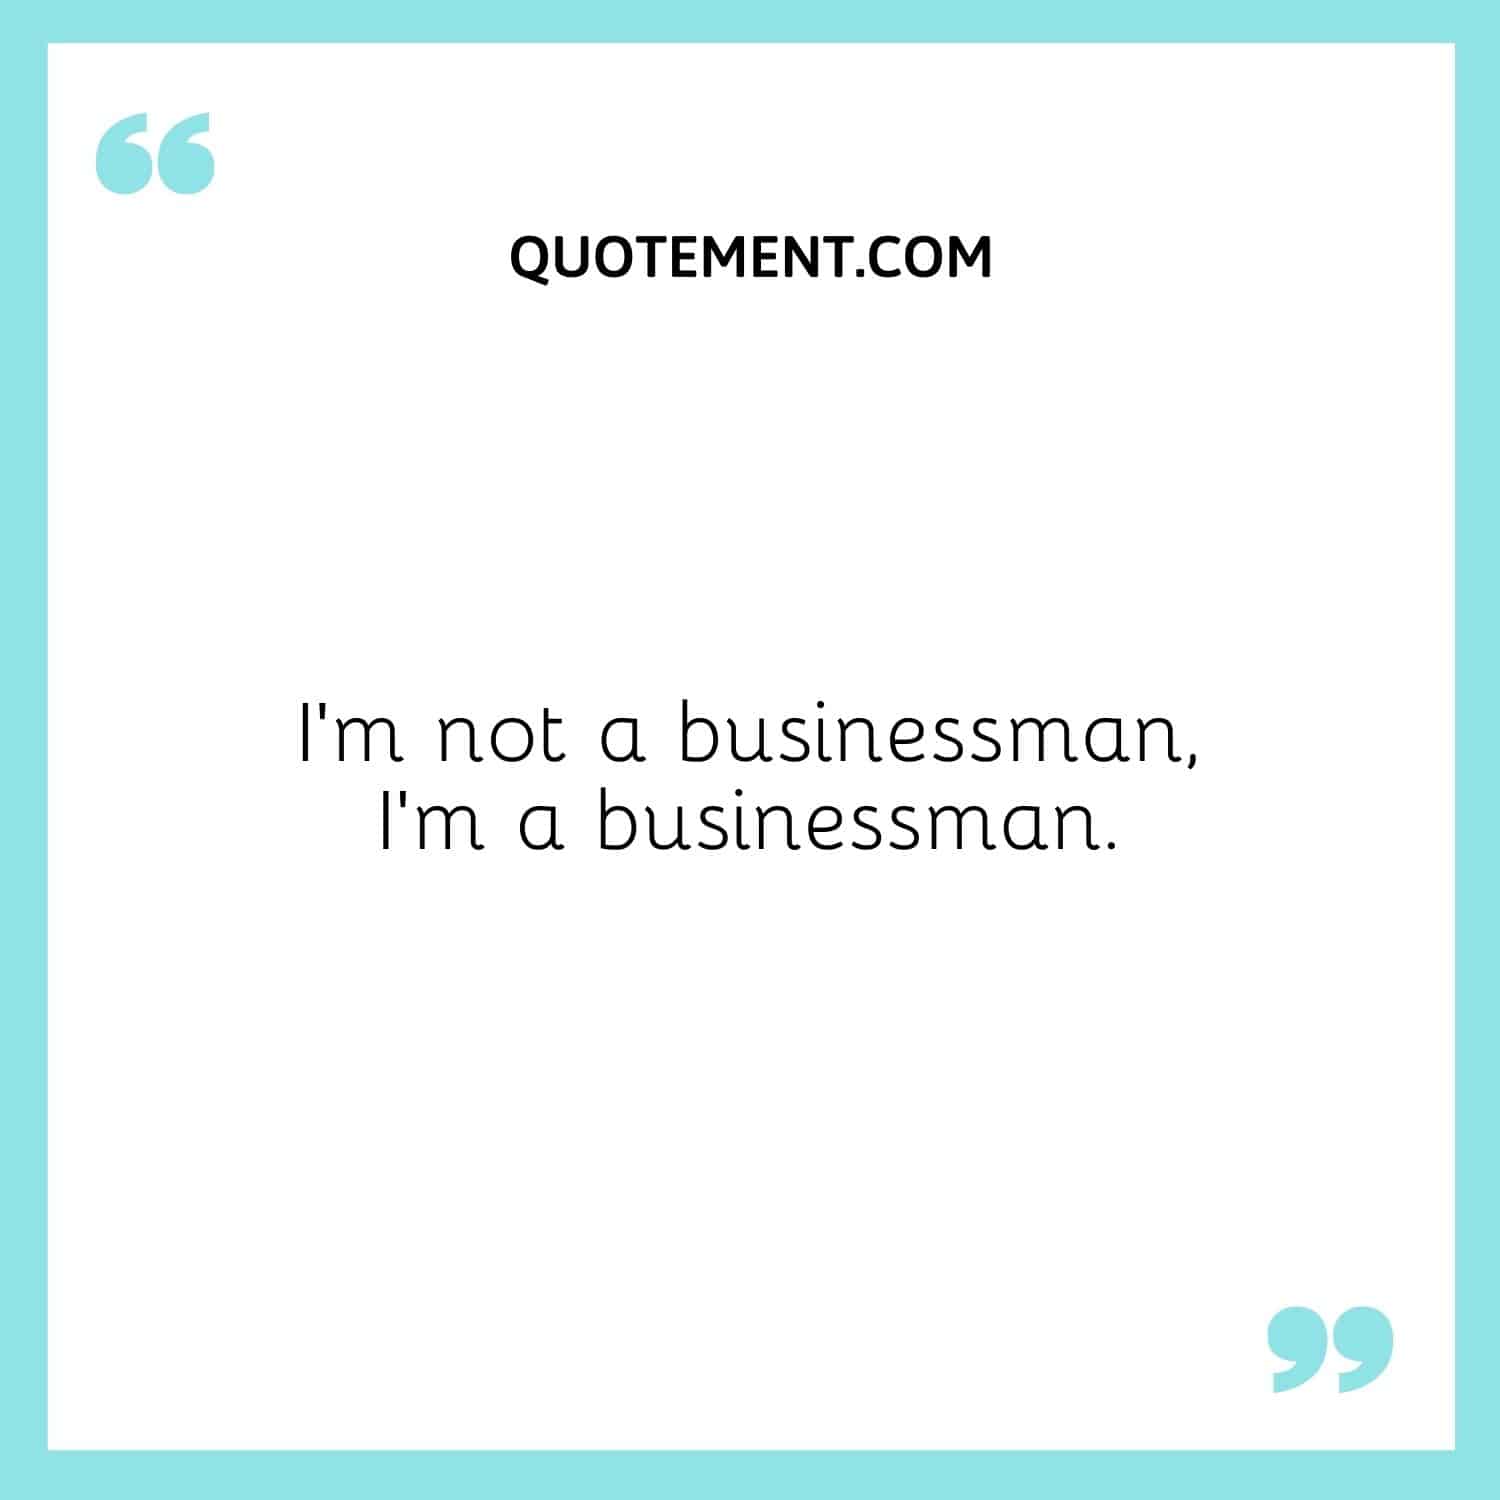 I’m not a businessman, I’m a businessman.